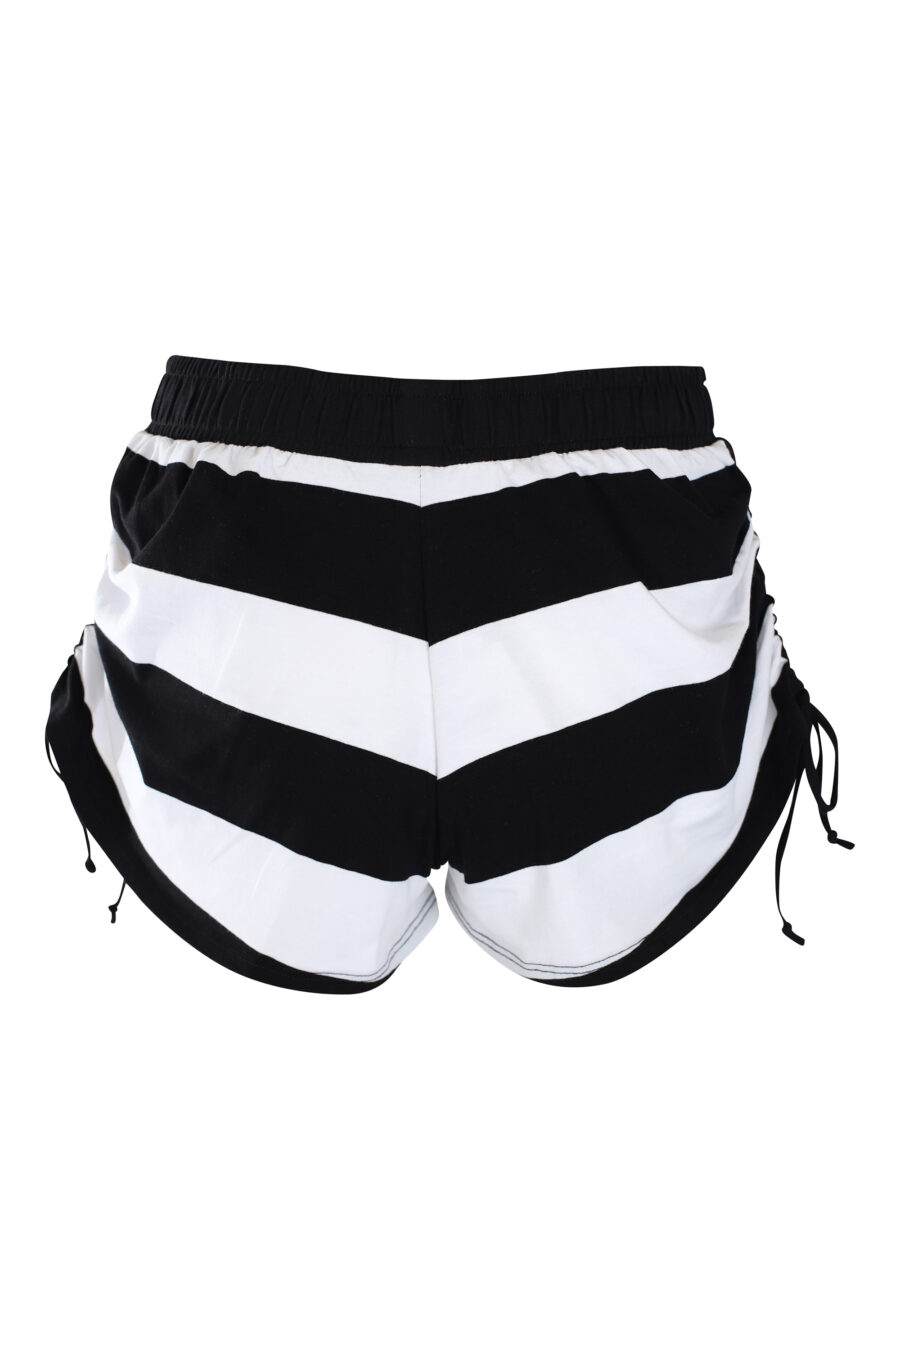 Zweifarbig schwarz-weiß gestreifte Shorts mit goldenem Mini-Logo - IMG 2248